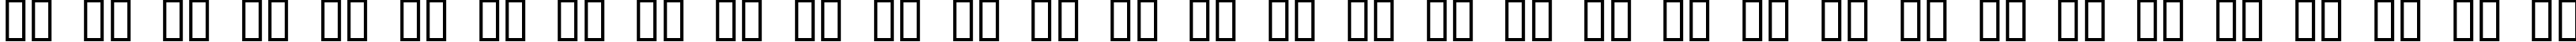 Пример написания русского алфавита шрифтом Goudy Stout